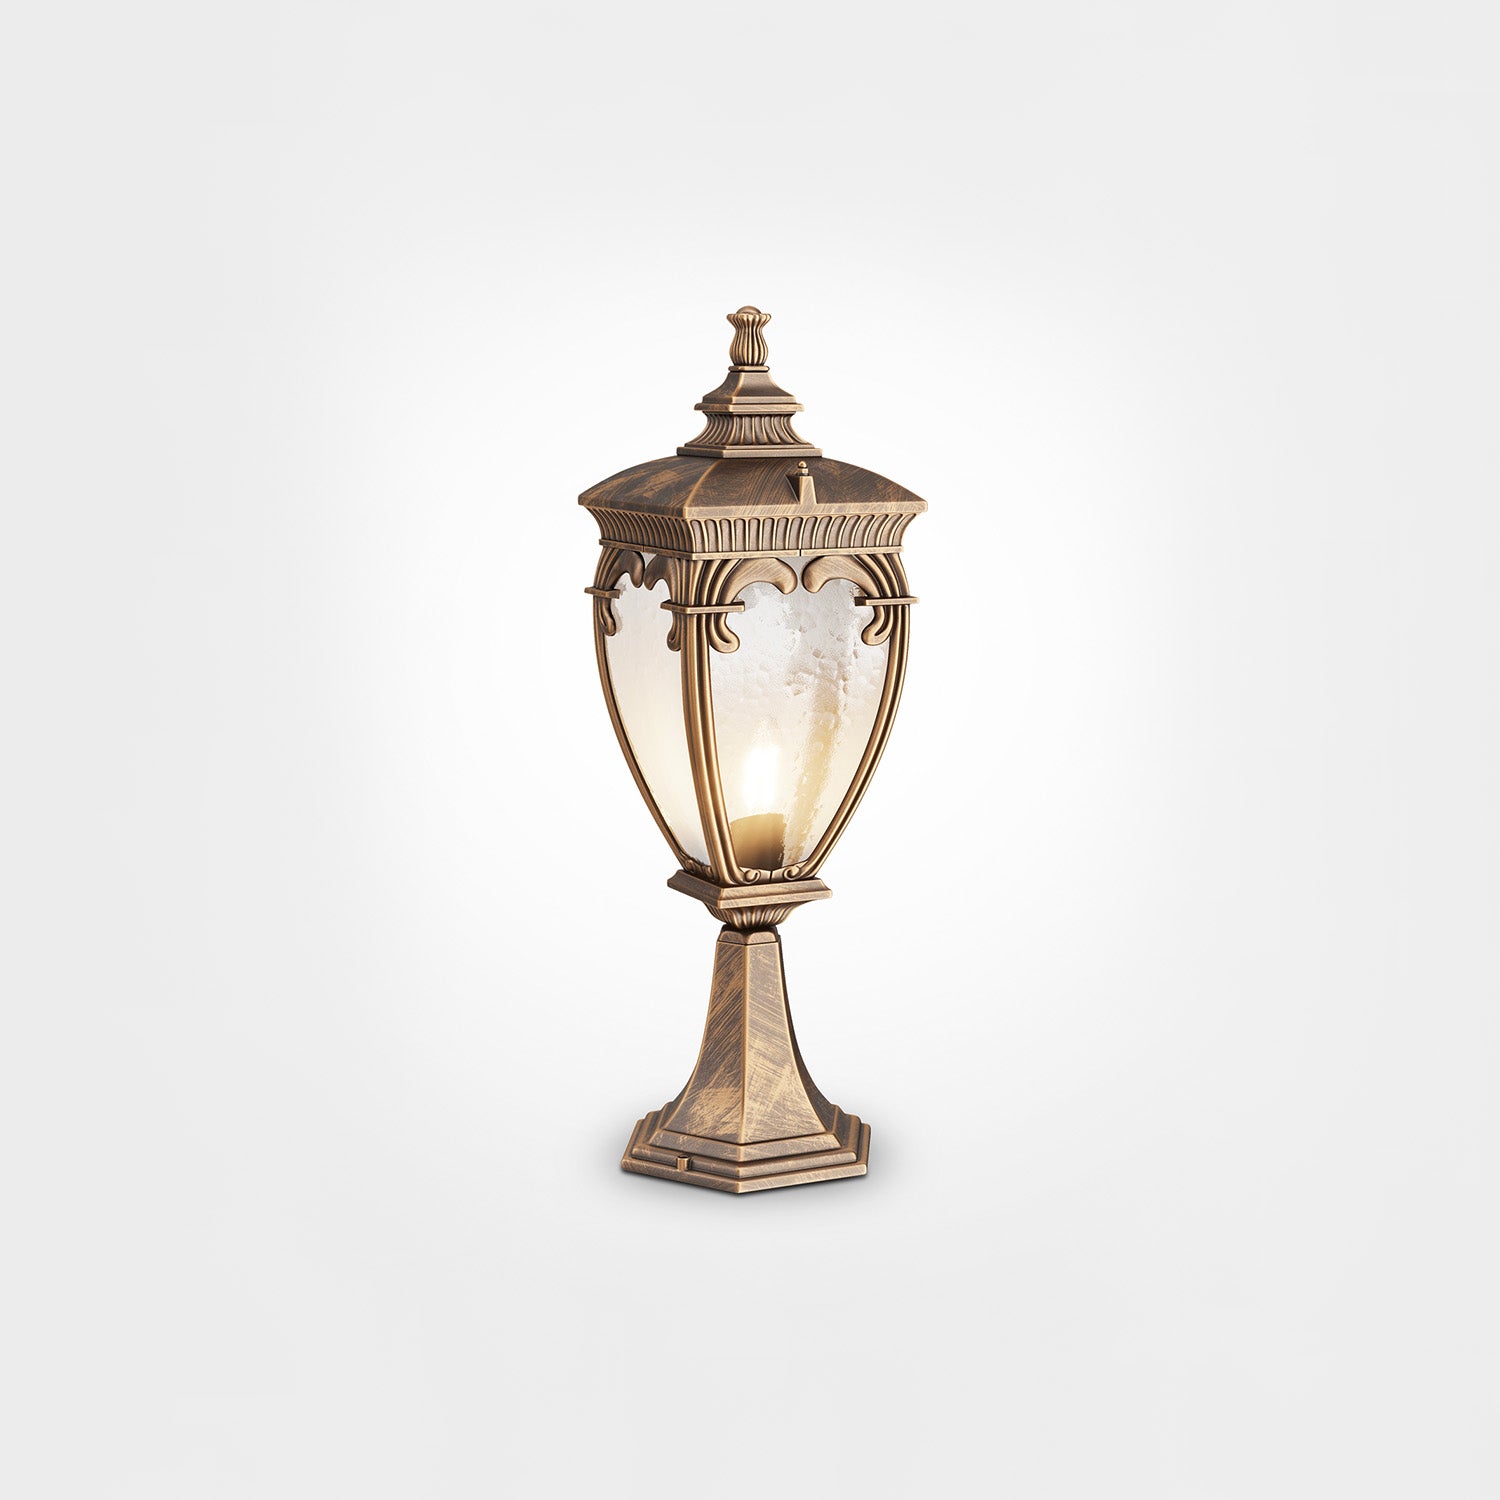 FLEUR - Vintage Italian style outdoor lamp, lantern